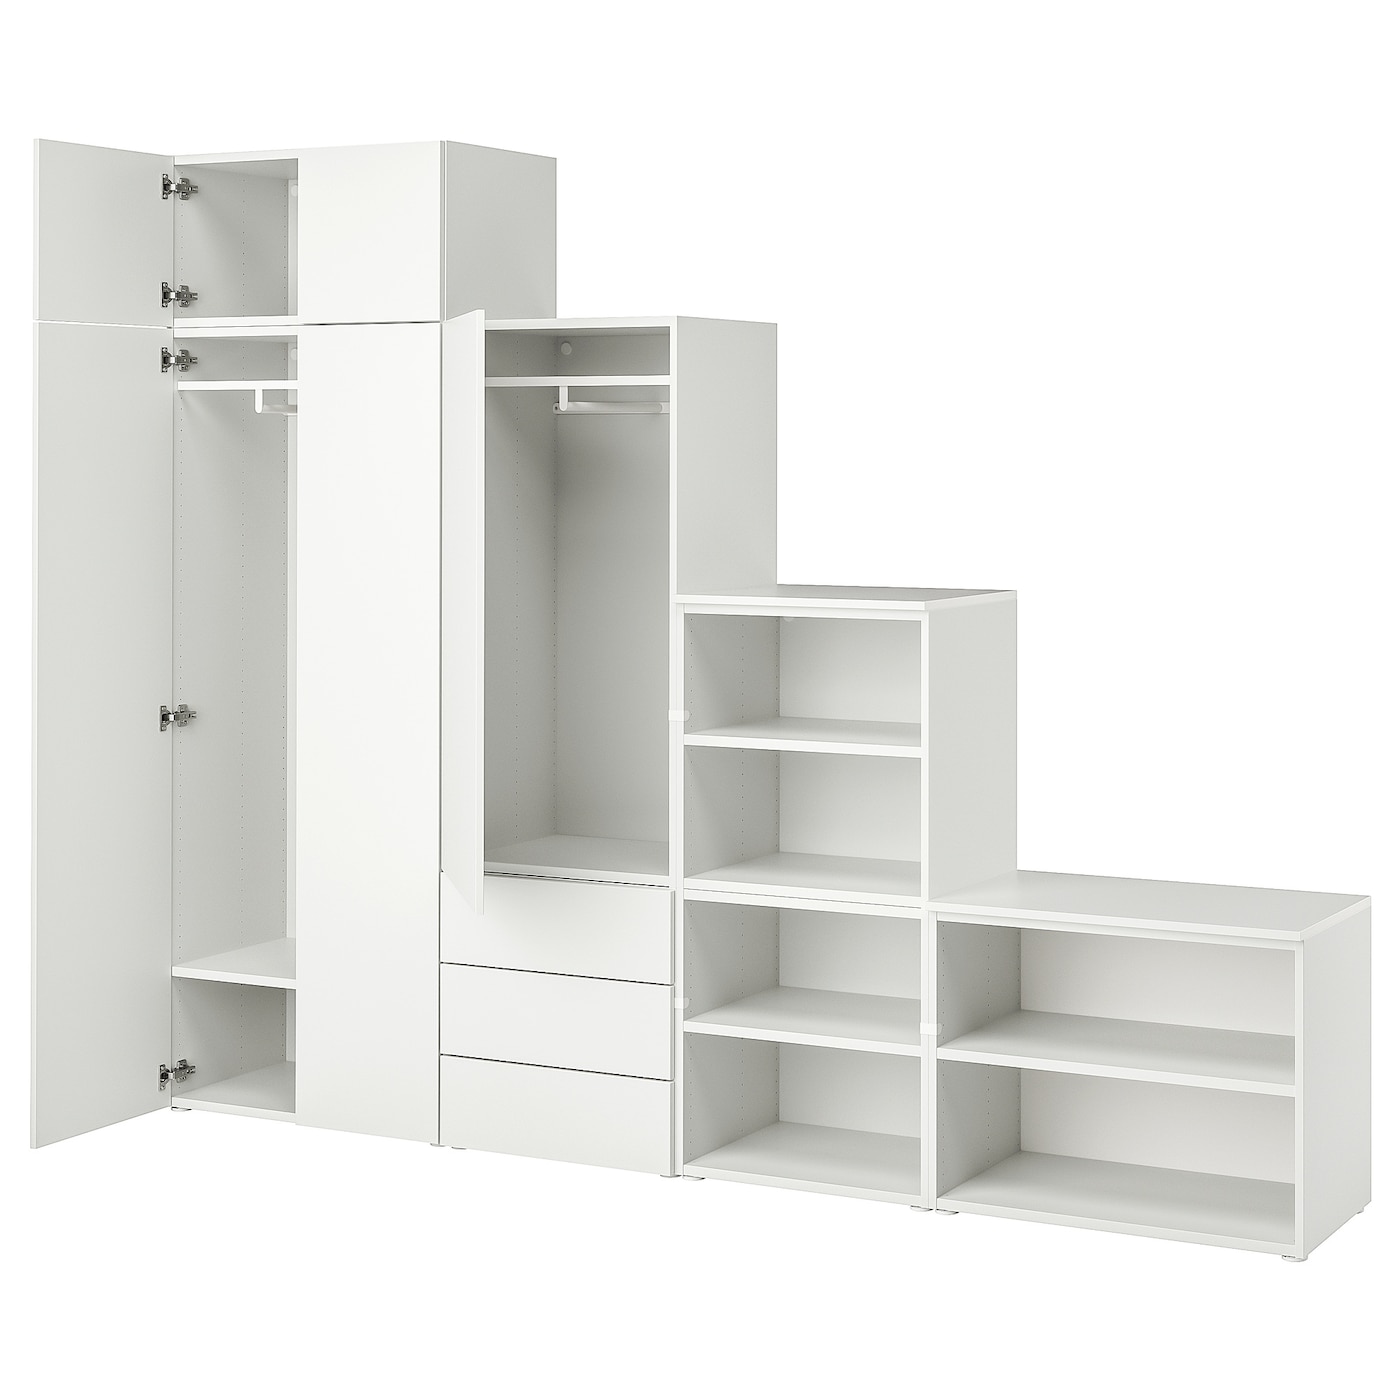 Платяной шкаф - PLATSA/IKEA/ ПЛАТСА ИКЕА,280x42x221 см, белый